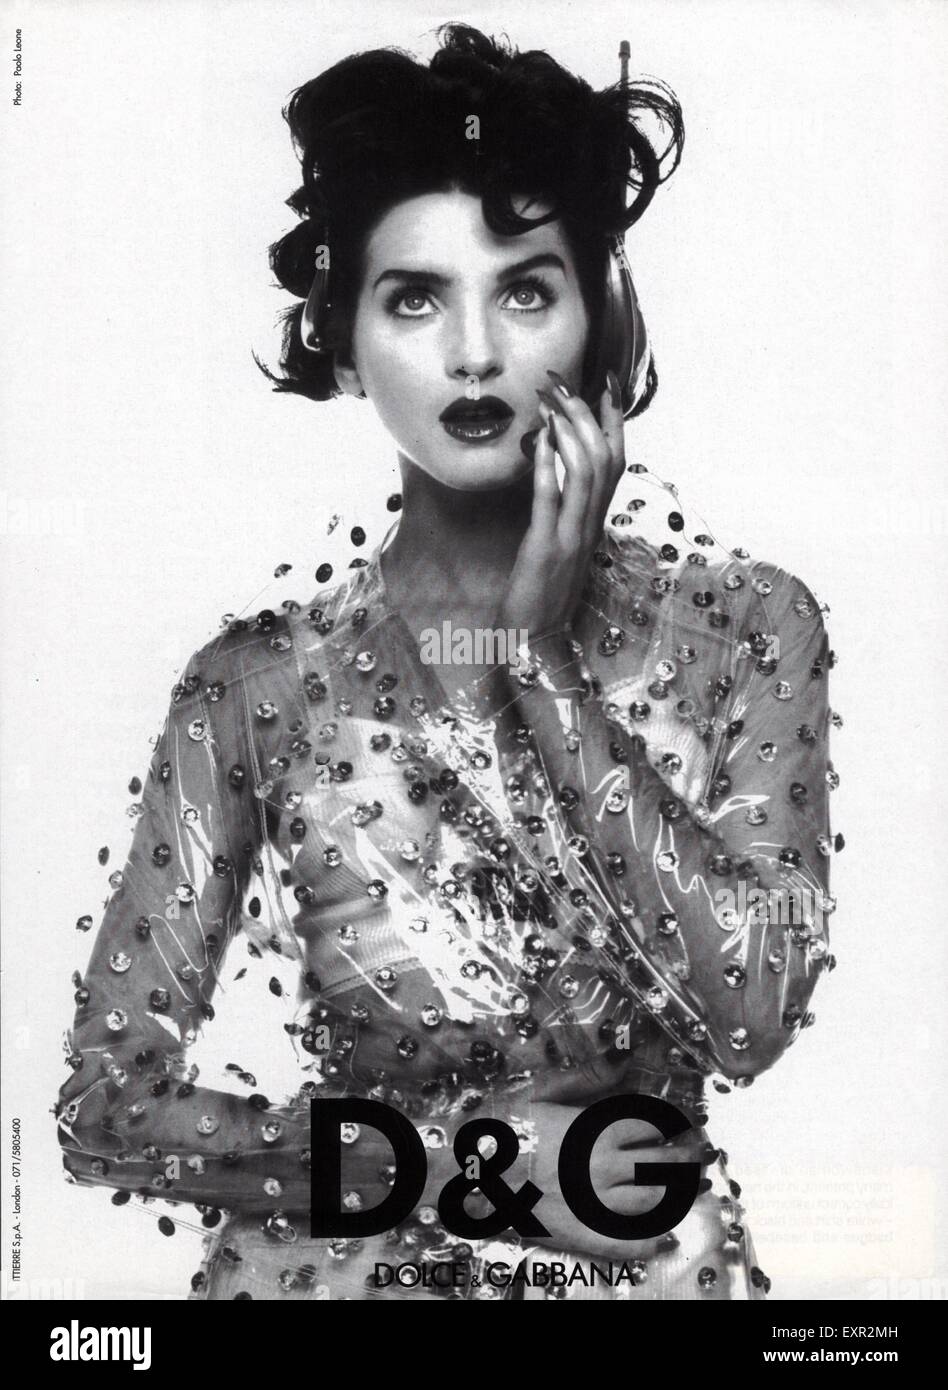 1990s UK Dolce \u0026 Gabbana Magazine 